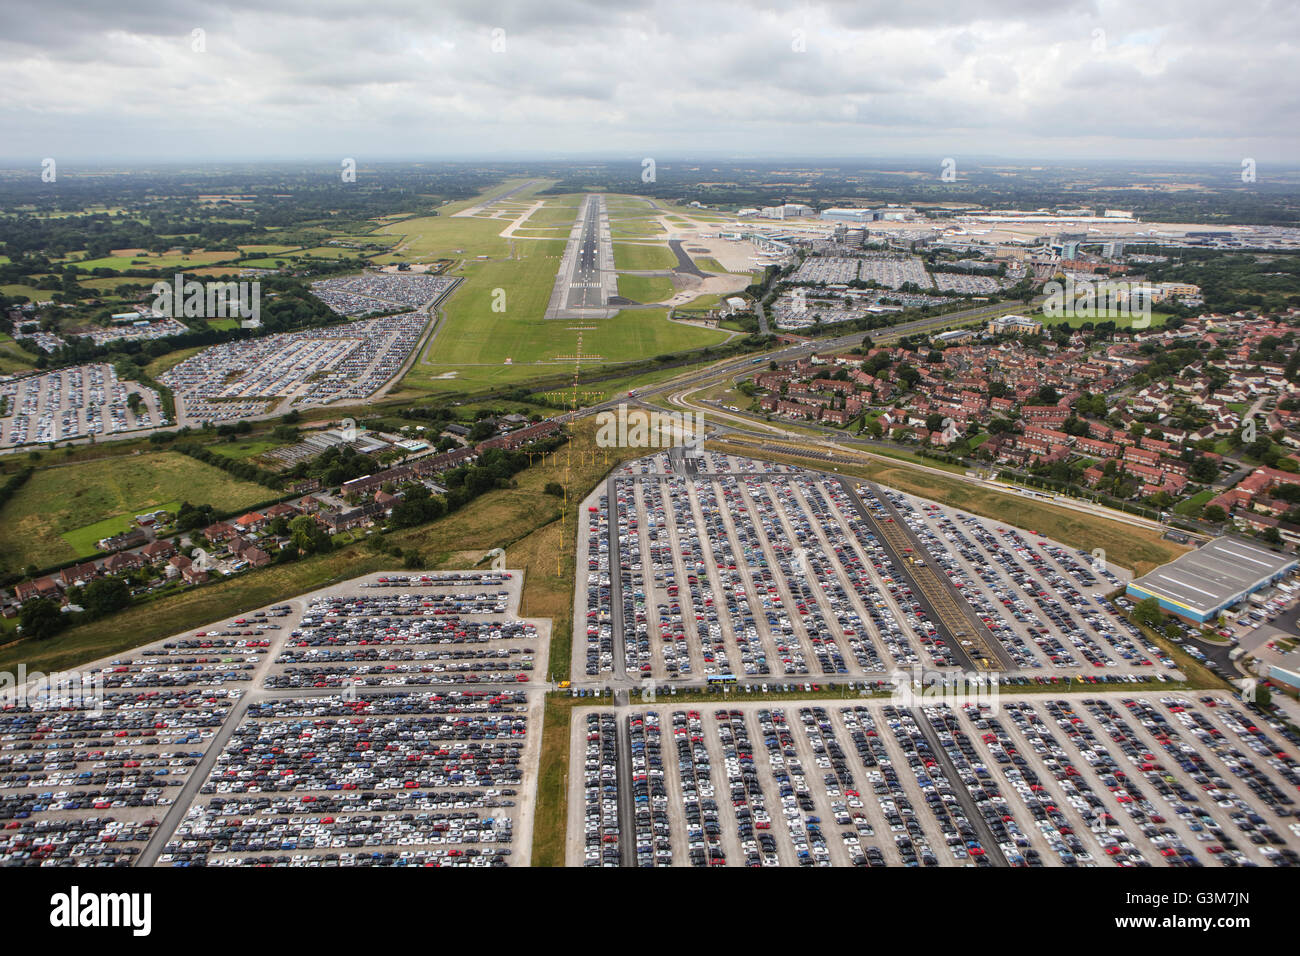 Una vista aérea del aeropuerto internacional de Manchester Foto de stock